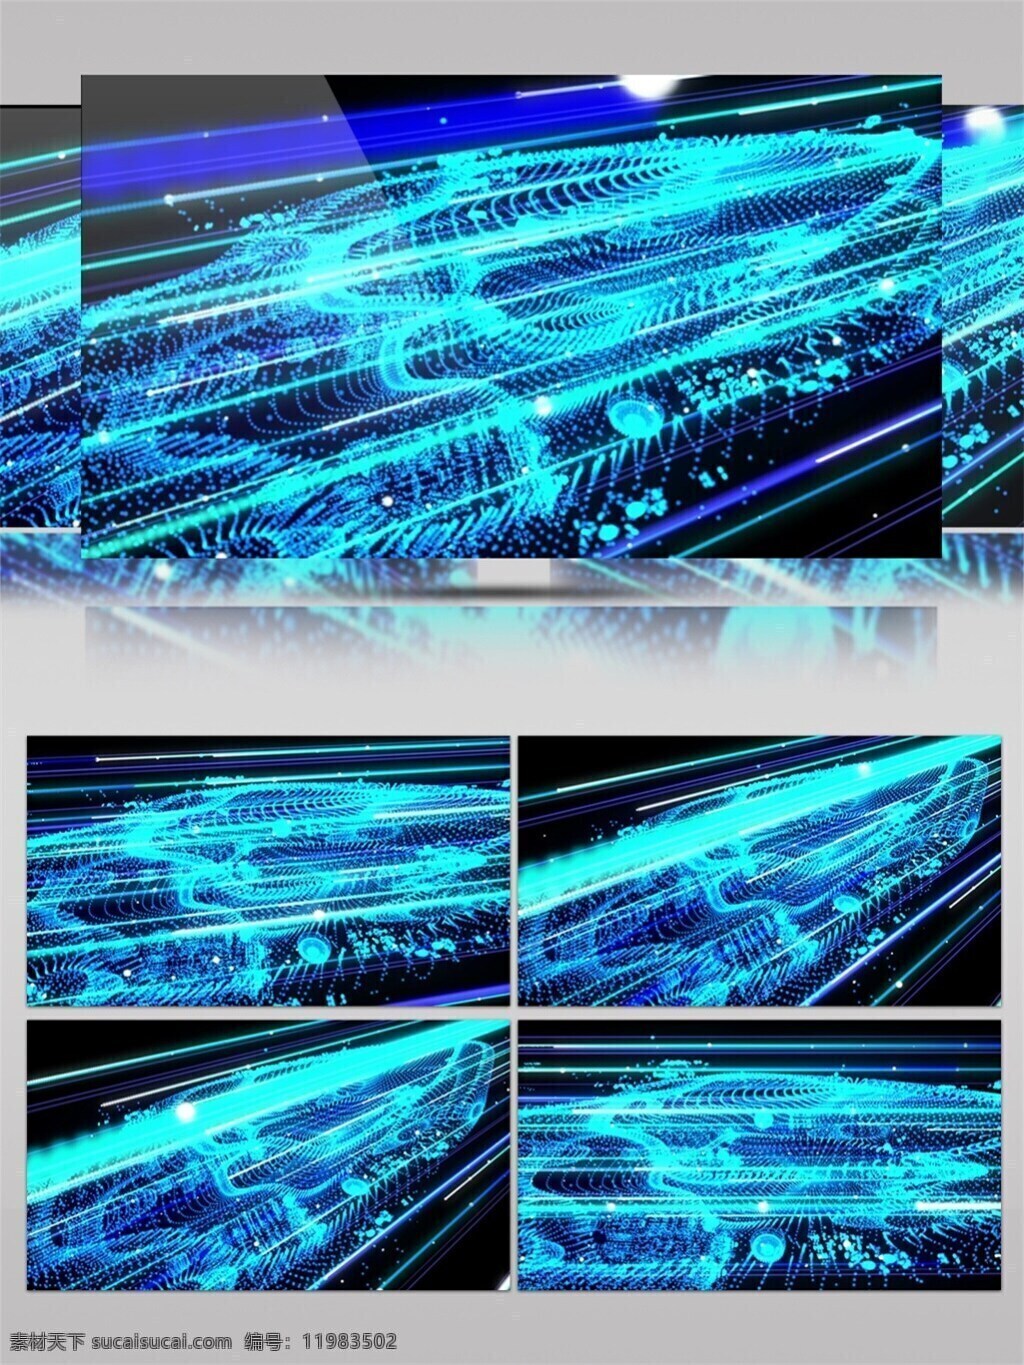 蓝光 宇宙飞船 视频 飞行 高清素材 光景素材 光束 蓝色 唯美素材 宇宙